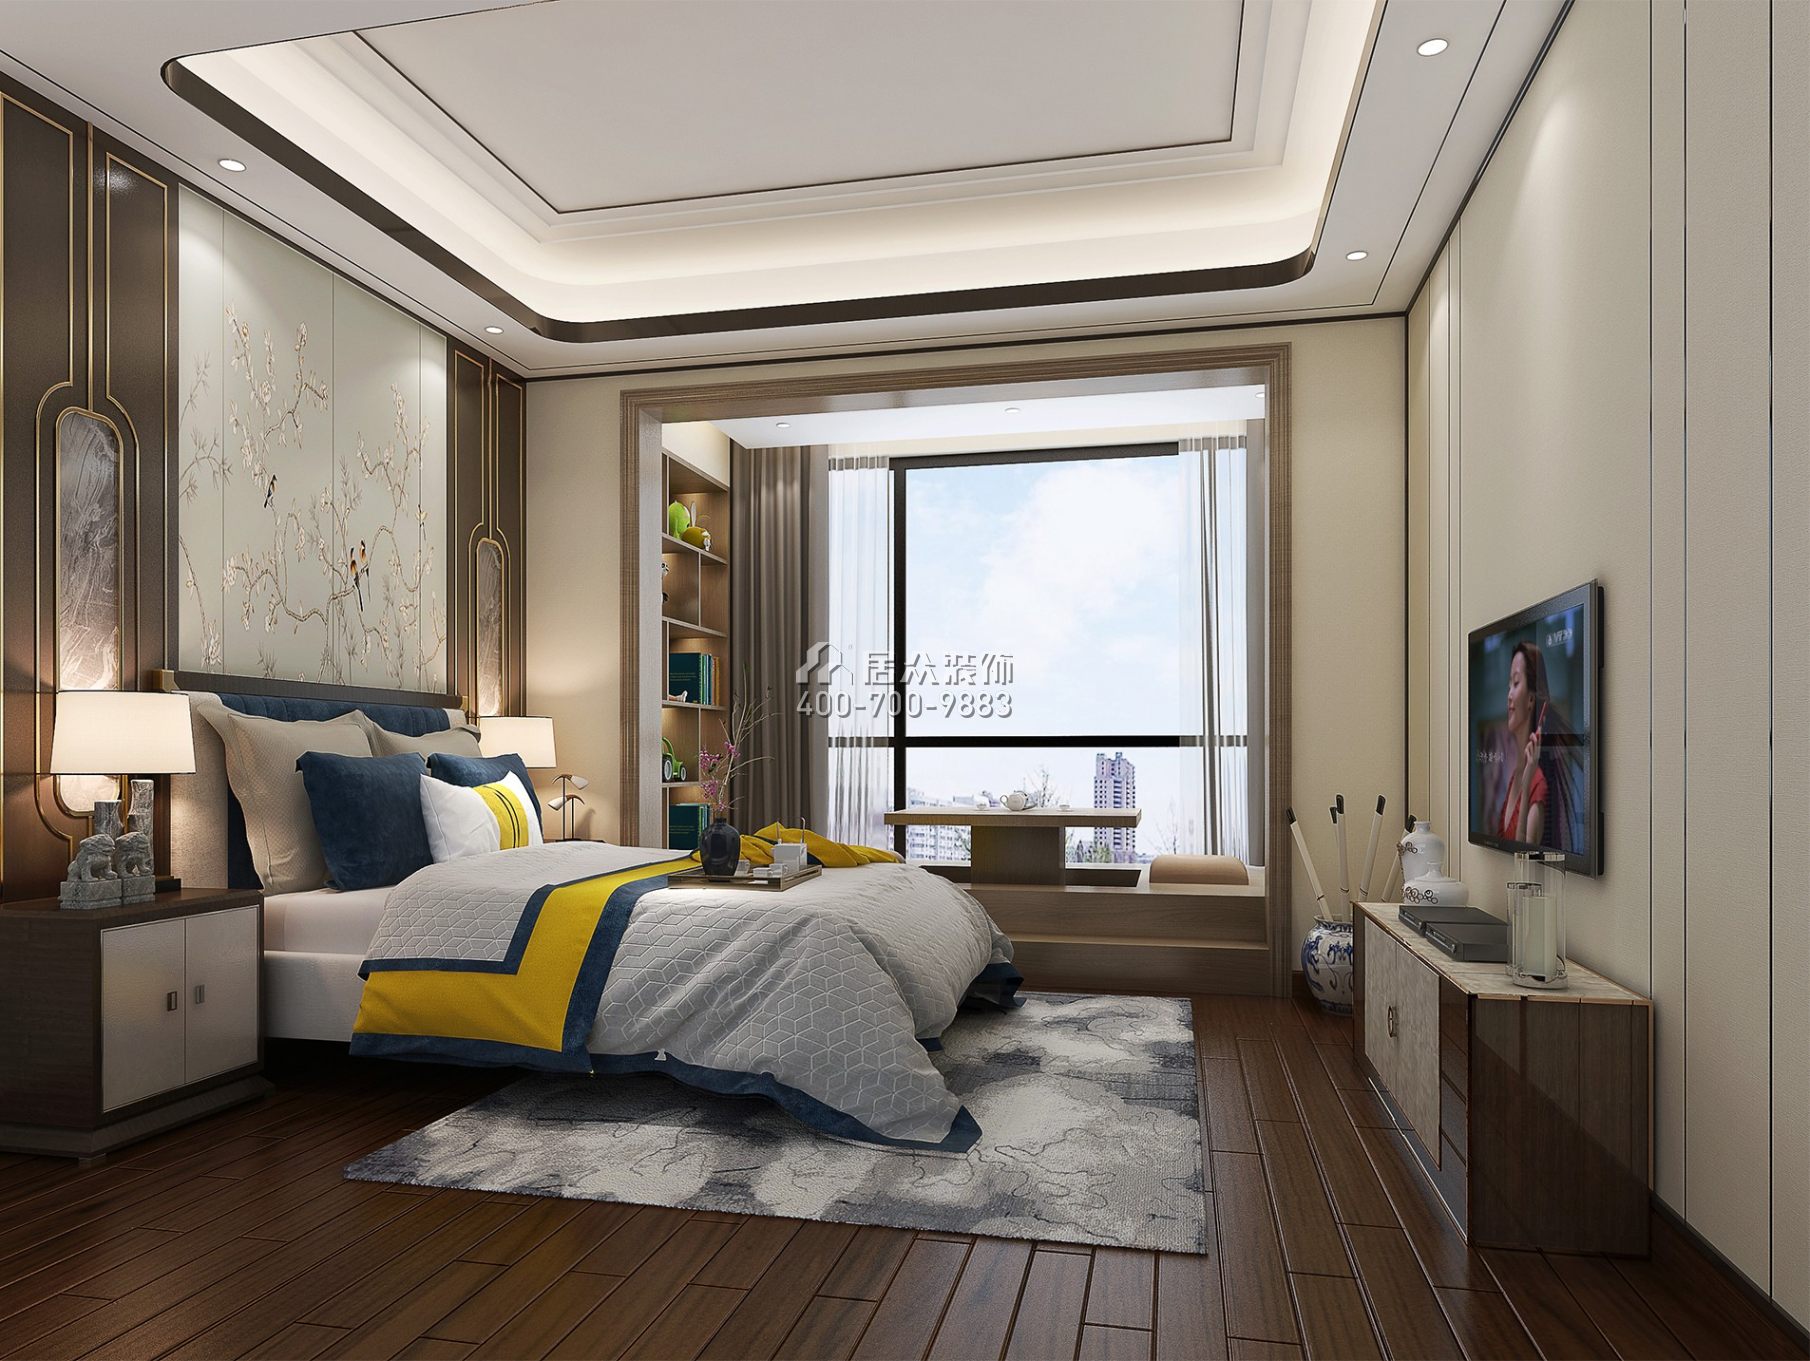 博林天瑞花园二期192平方米中式风格平层户型卧室装修效果图